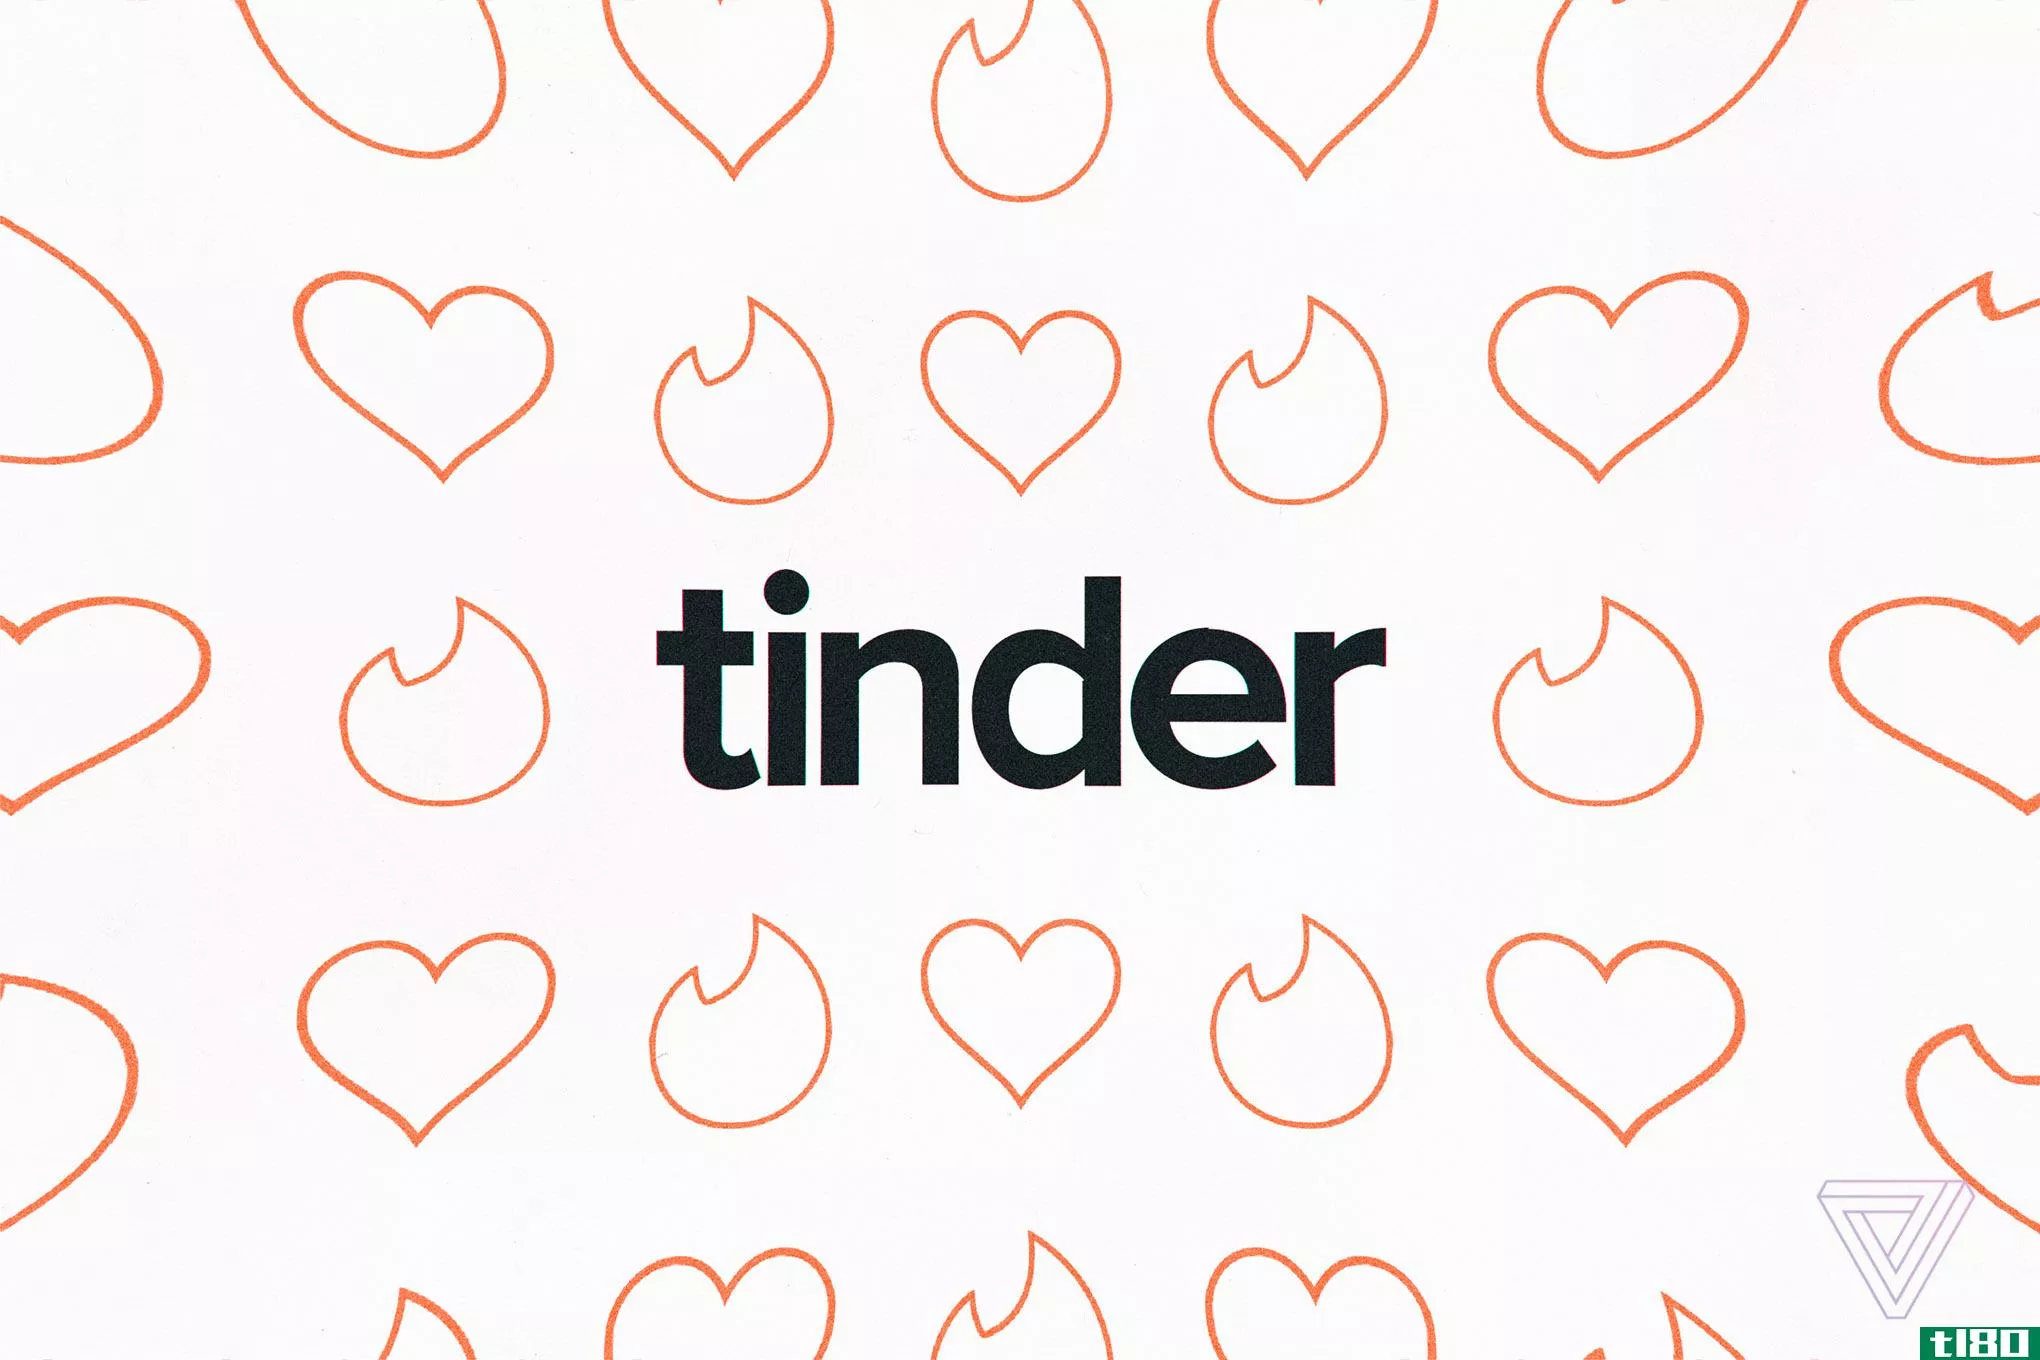 tinder将在今年晚些时候推出应用内视频聊天